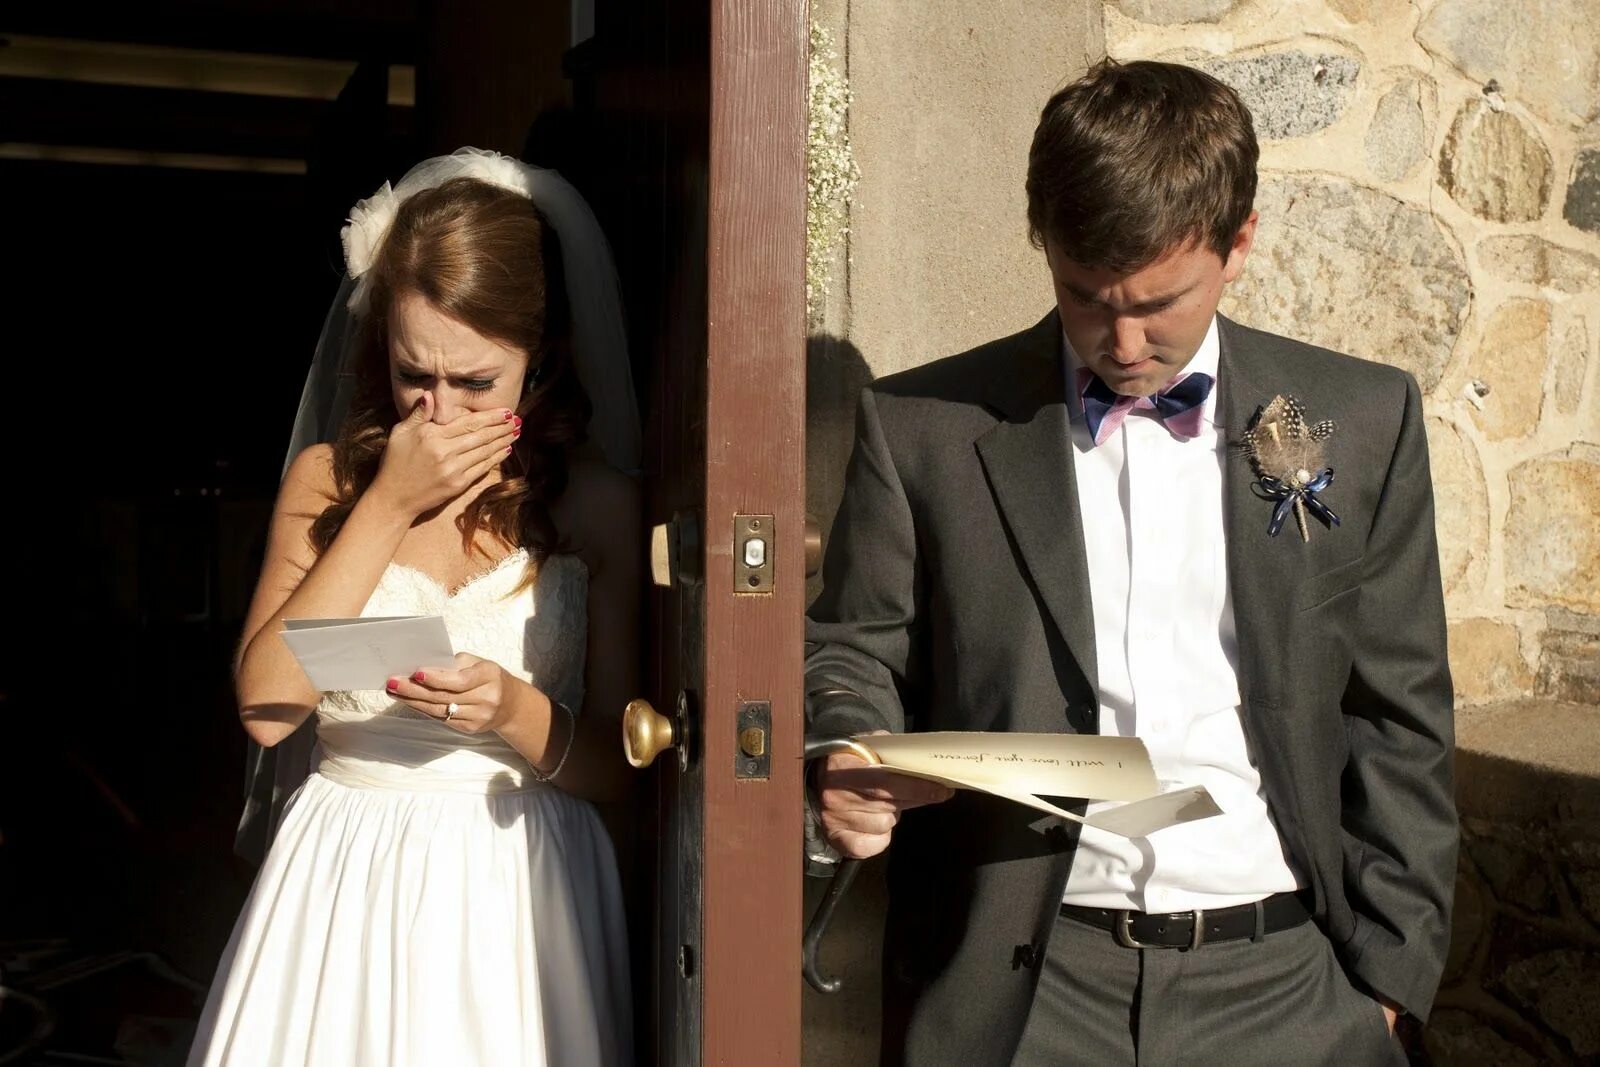 Мужчина и женщина свадьба. Невеста изменяет жениху на свадьбе. Парень перед свадьбой. Фотосессия перед свадьбой жених и невеста. Свадьба измена мужу